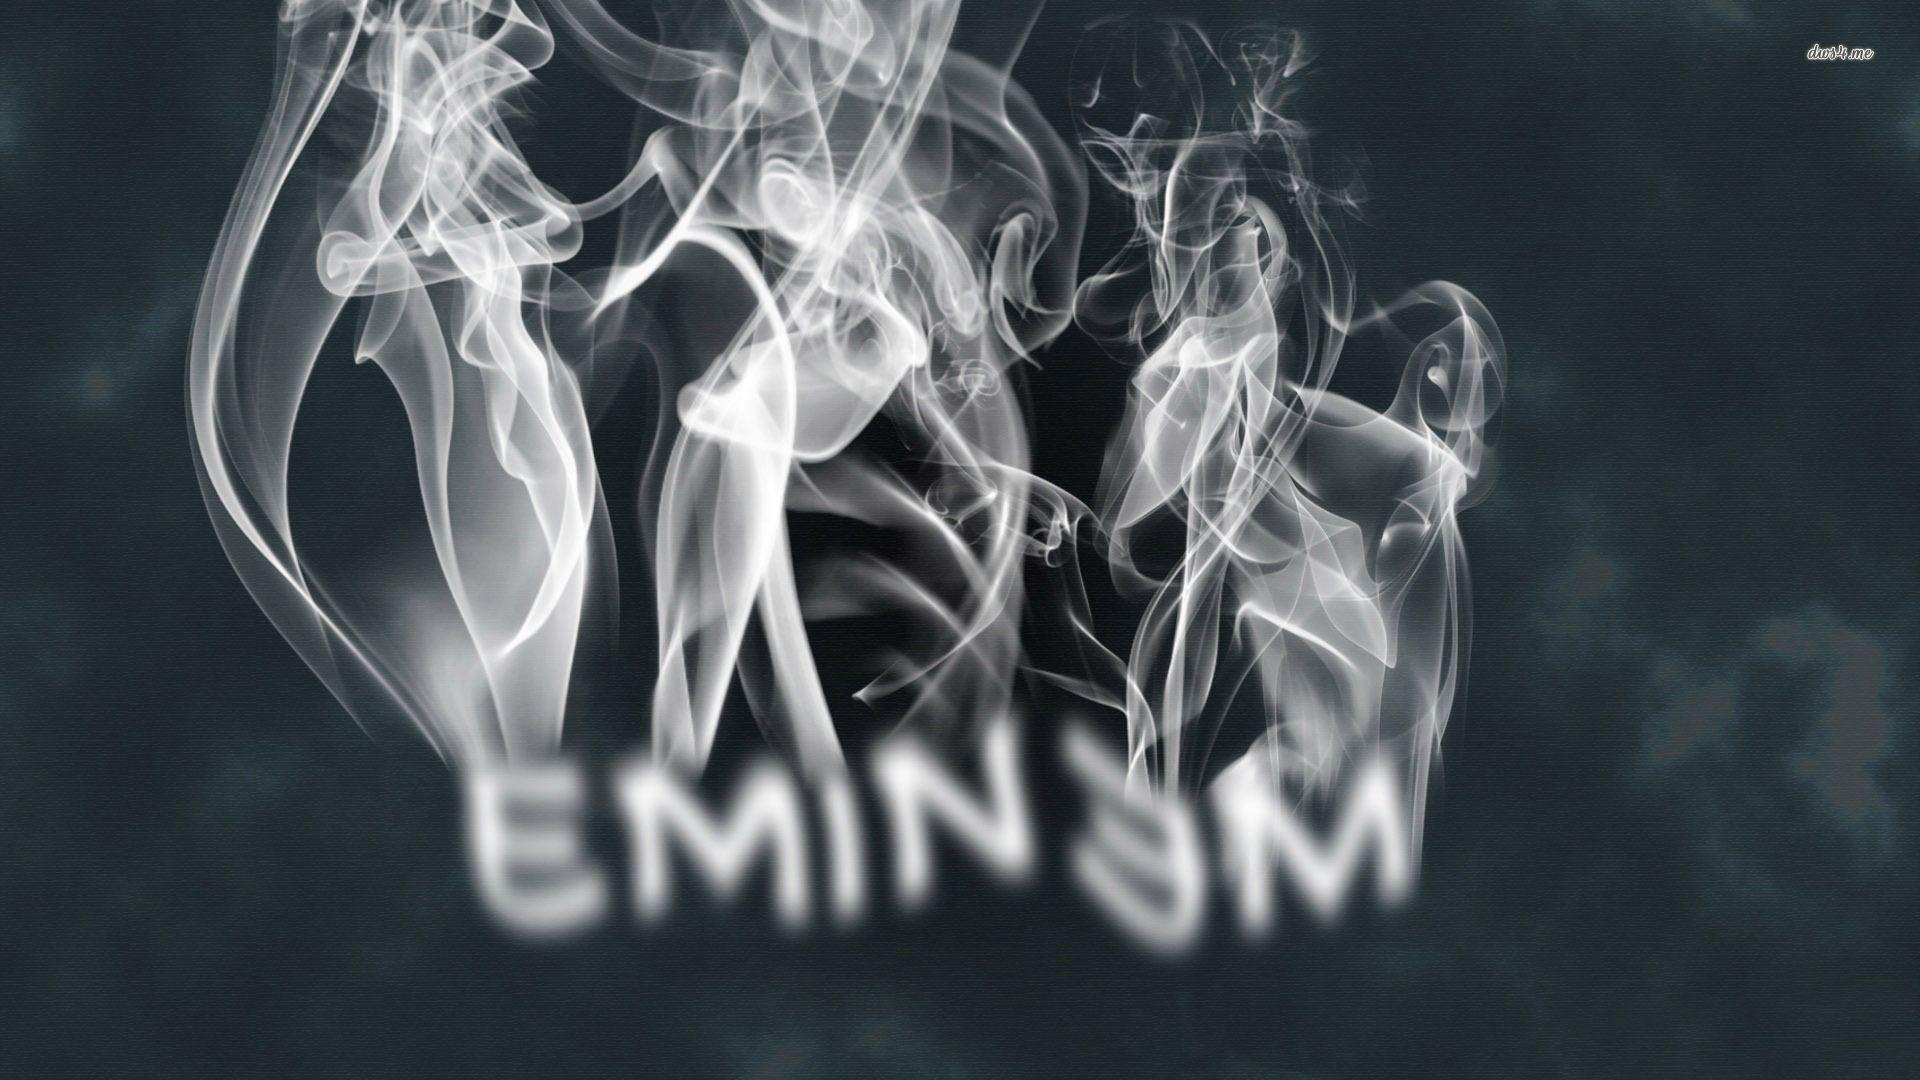 Top HD Eminem wallpaper